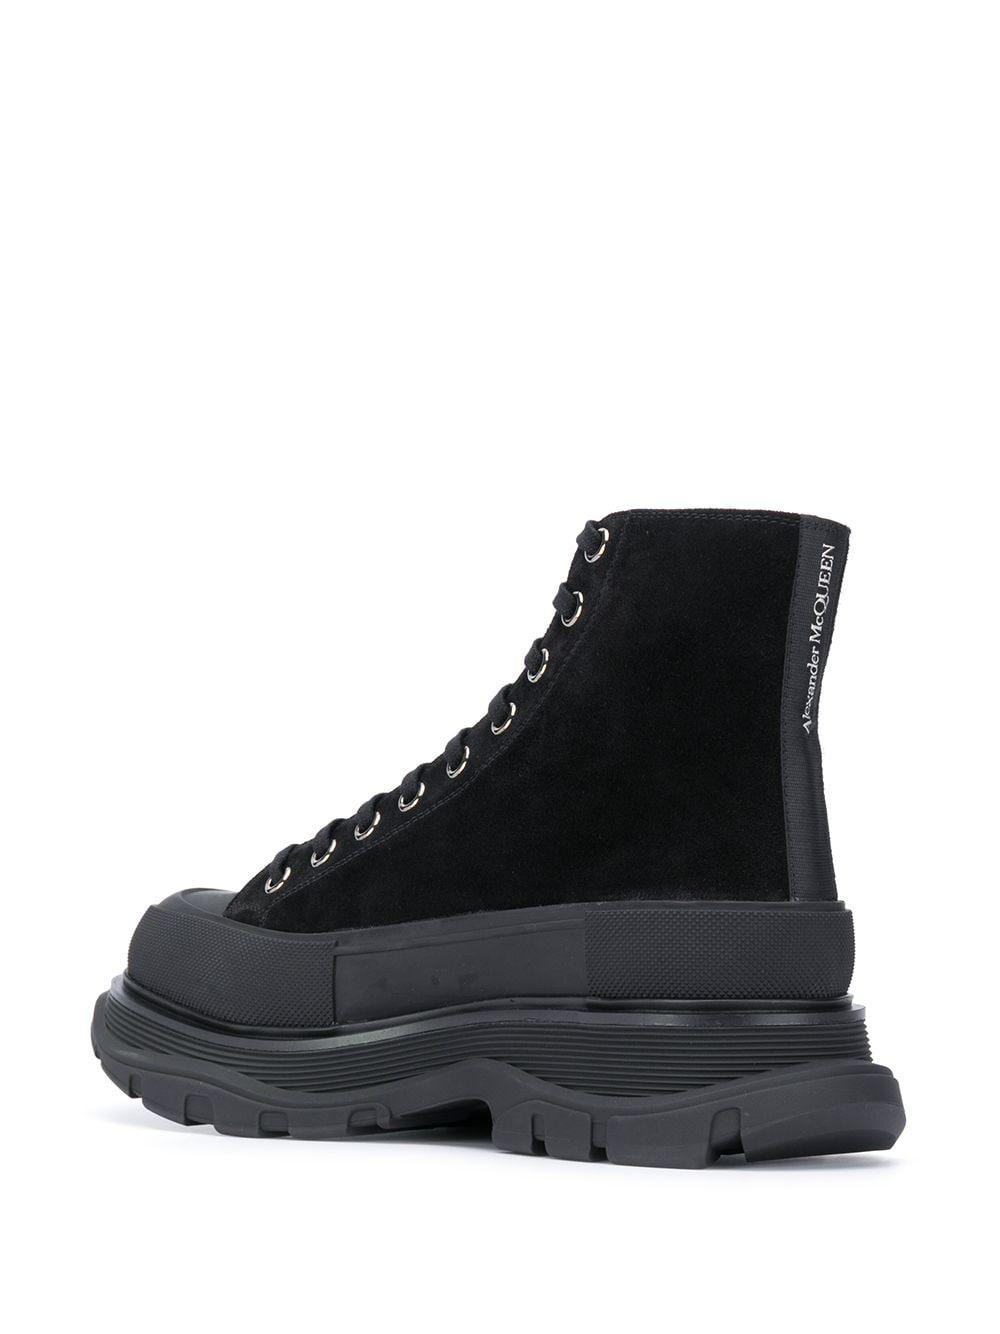 Alexander McQueen Tread Slick Boots in Black for Men - Lyst